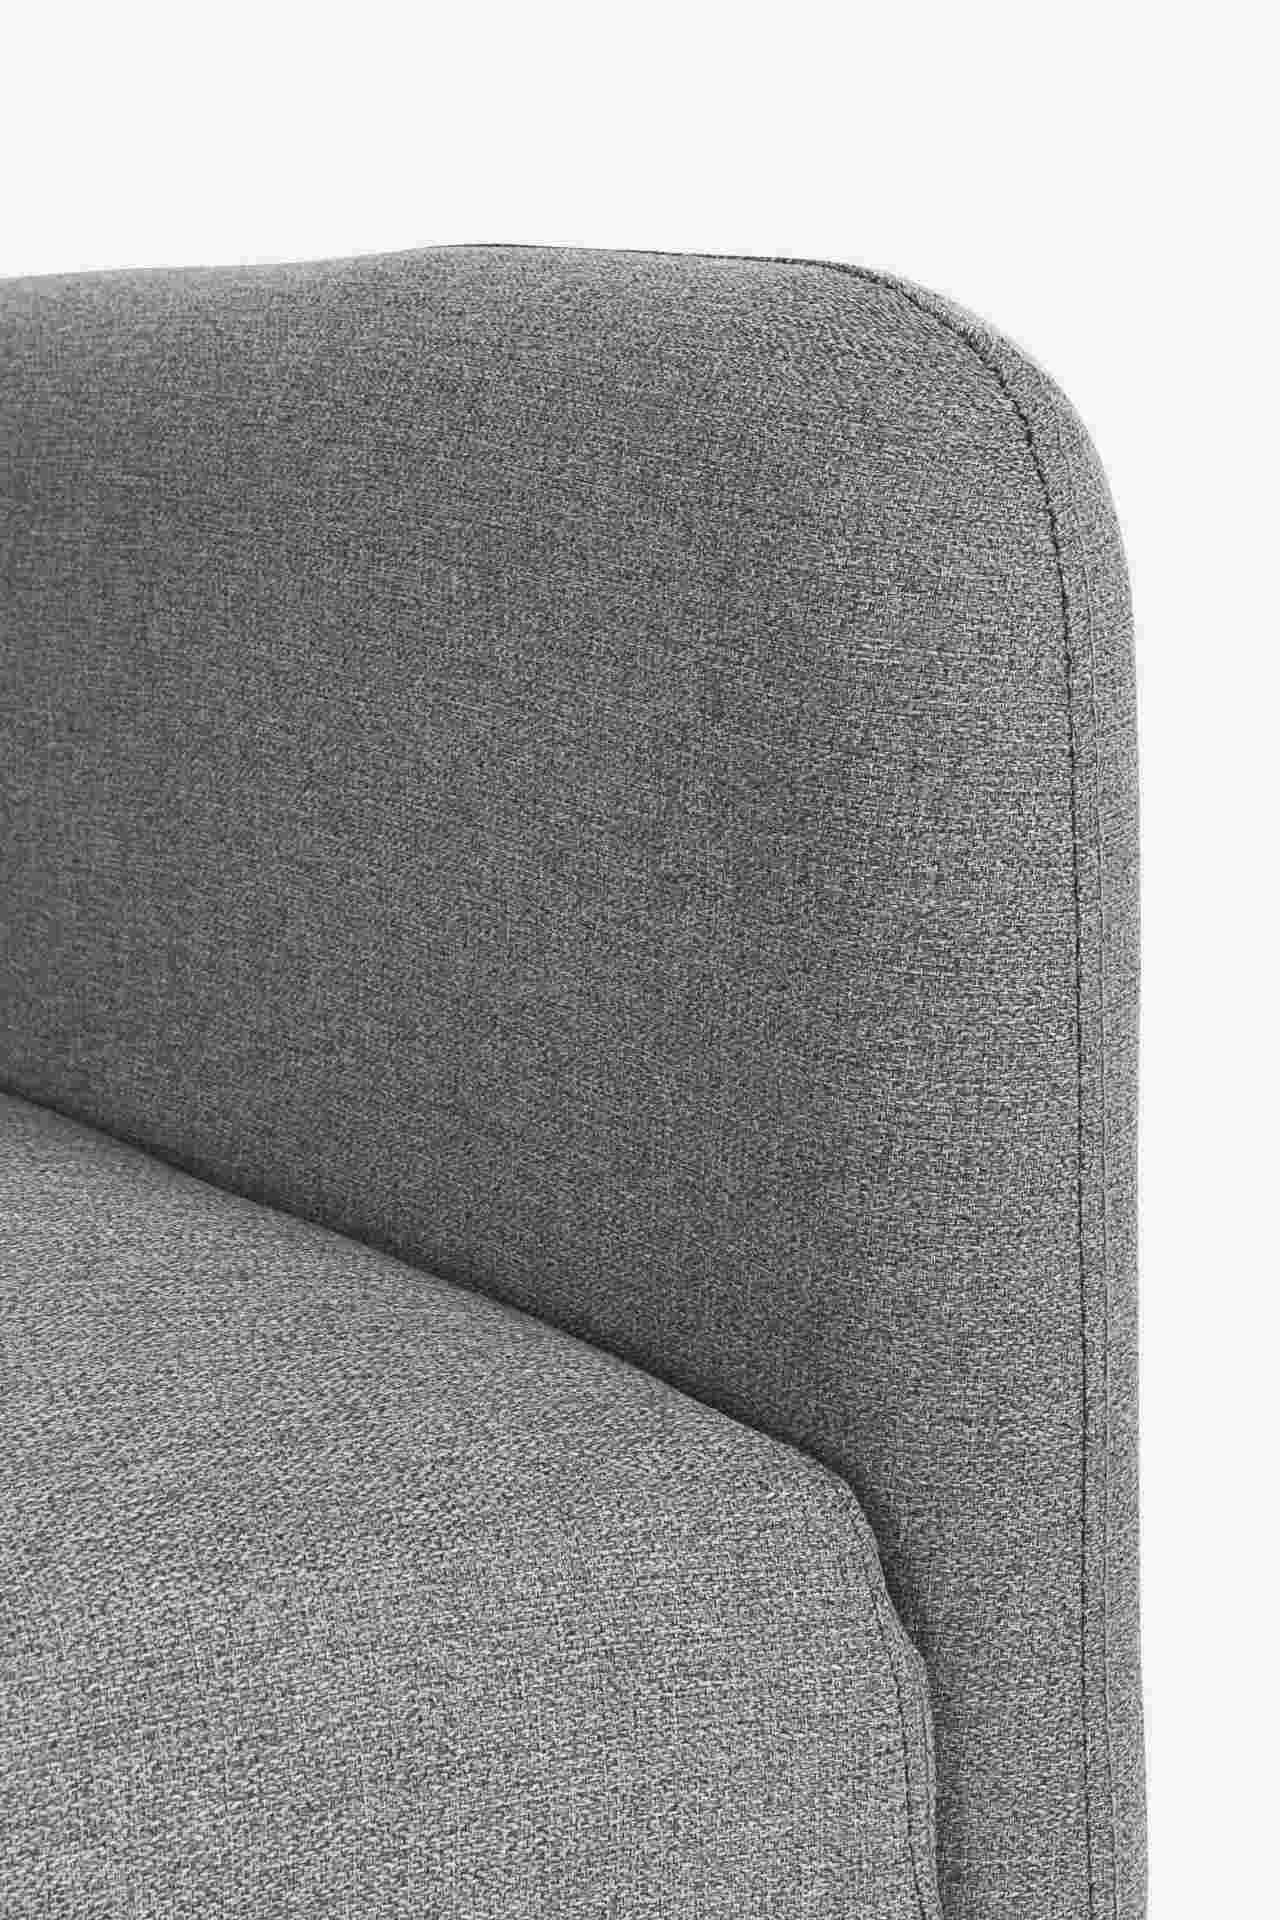 Das Schlafsofa Bridjet überzeugt mit seinem klassischen Design. Gefertigt wurde es aus Stoff, welcher einen grauen Farbton besitzt. Das Gestell ist aus Metall und hat eine schwarzen Farbe. Die Schlaffunktion hat ein Maß von 180x105 cm. Das Sofa ist in der